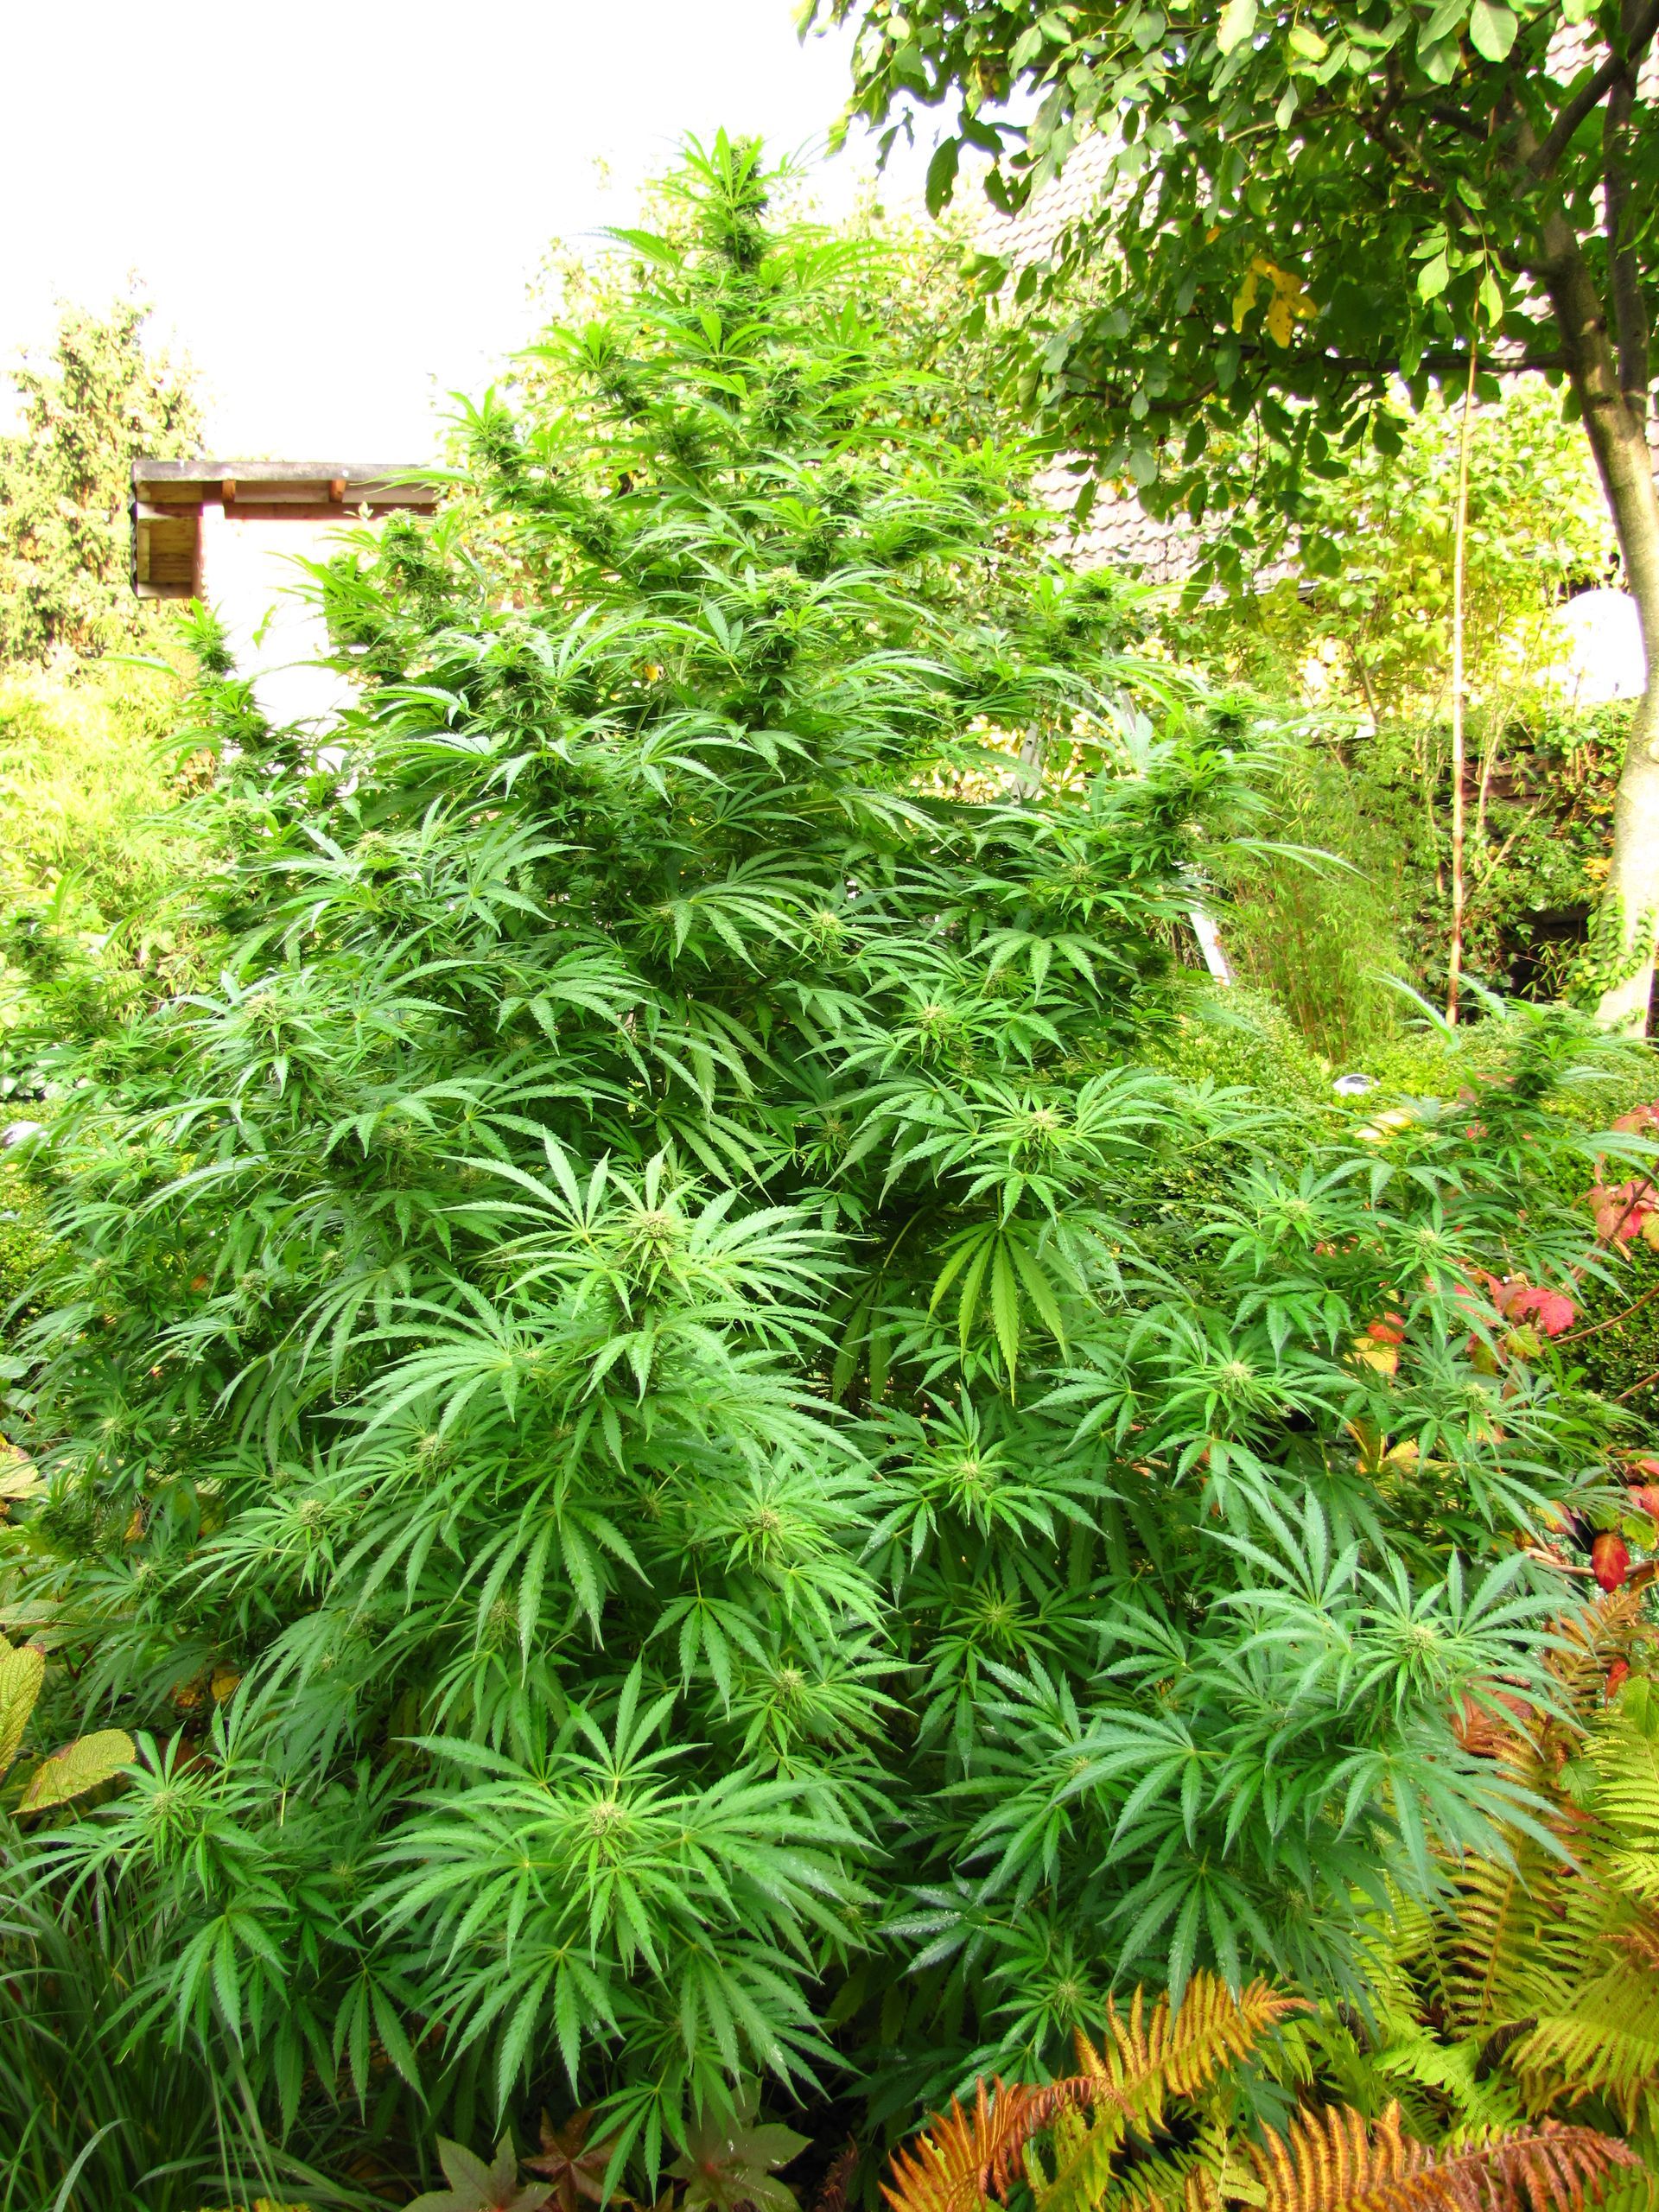 Cannabispflanze im Garten